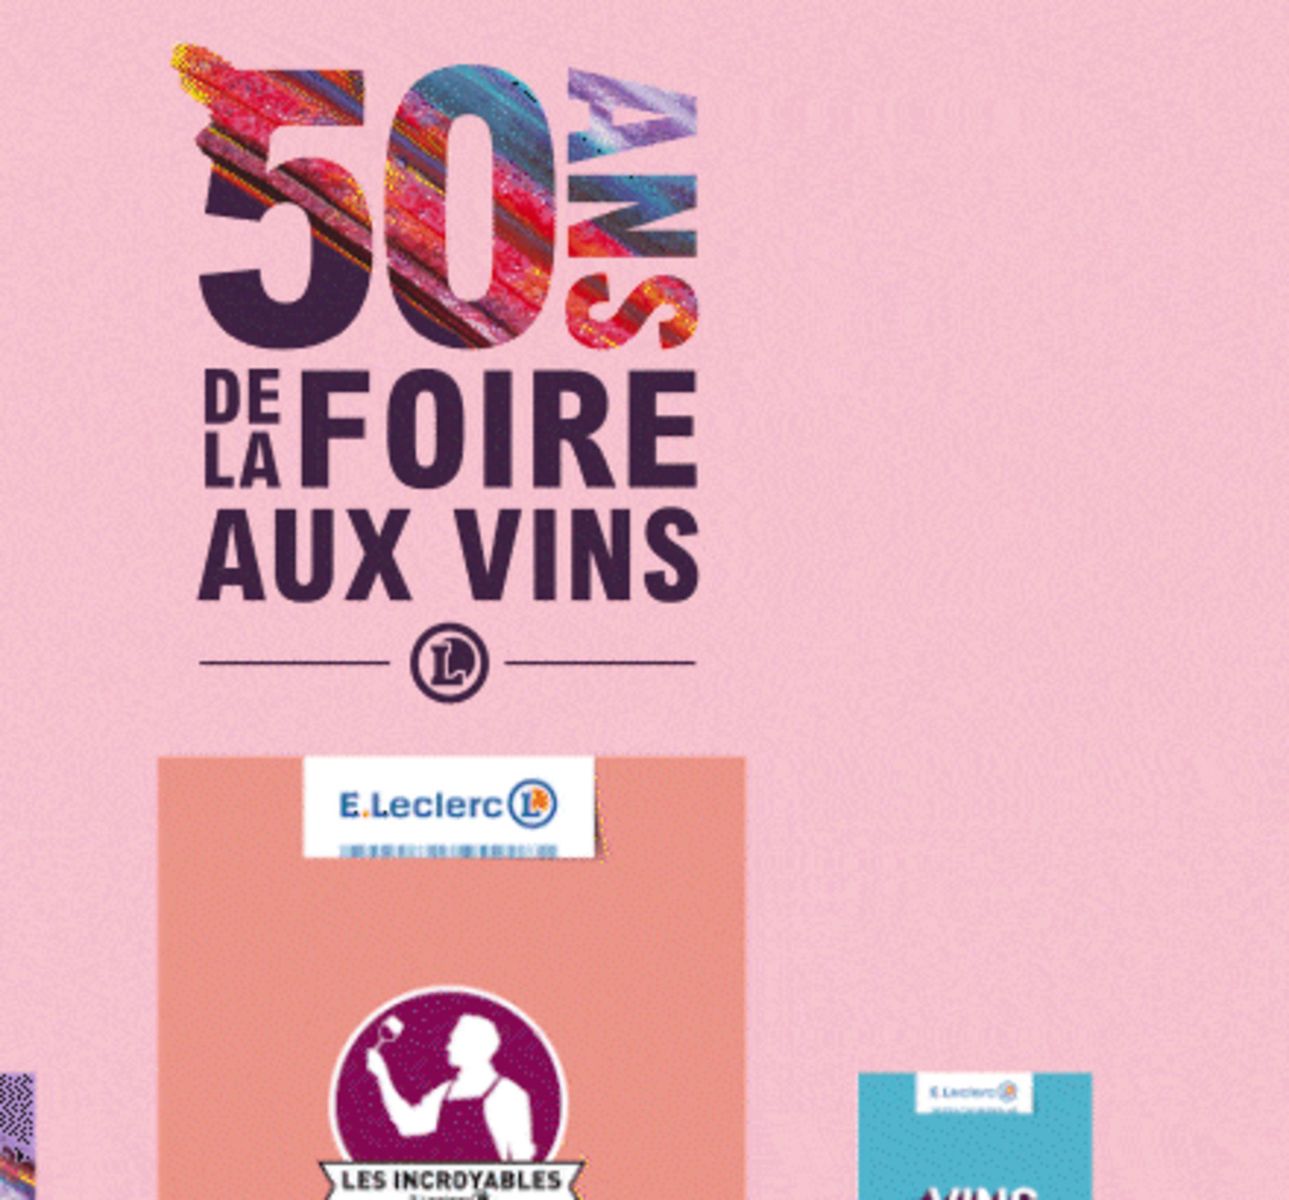 Catalogue Foire Aux Vins - Mixte, page 00625